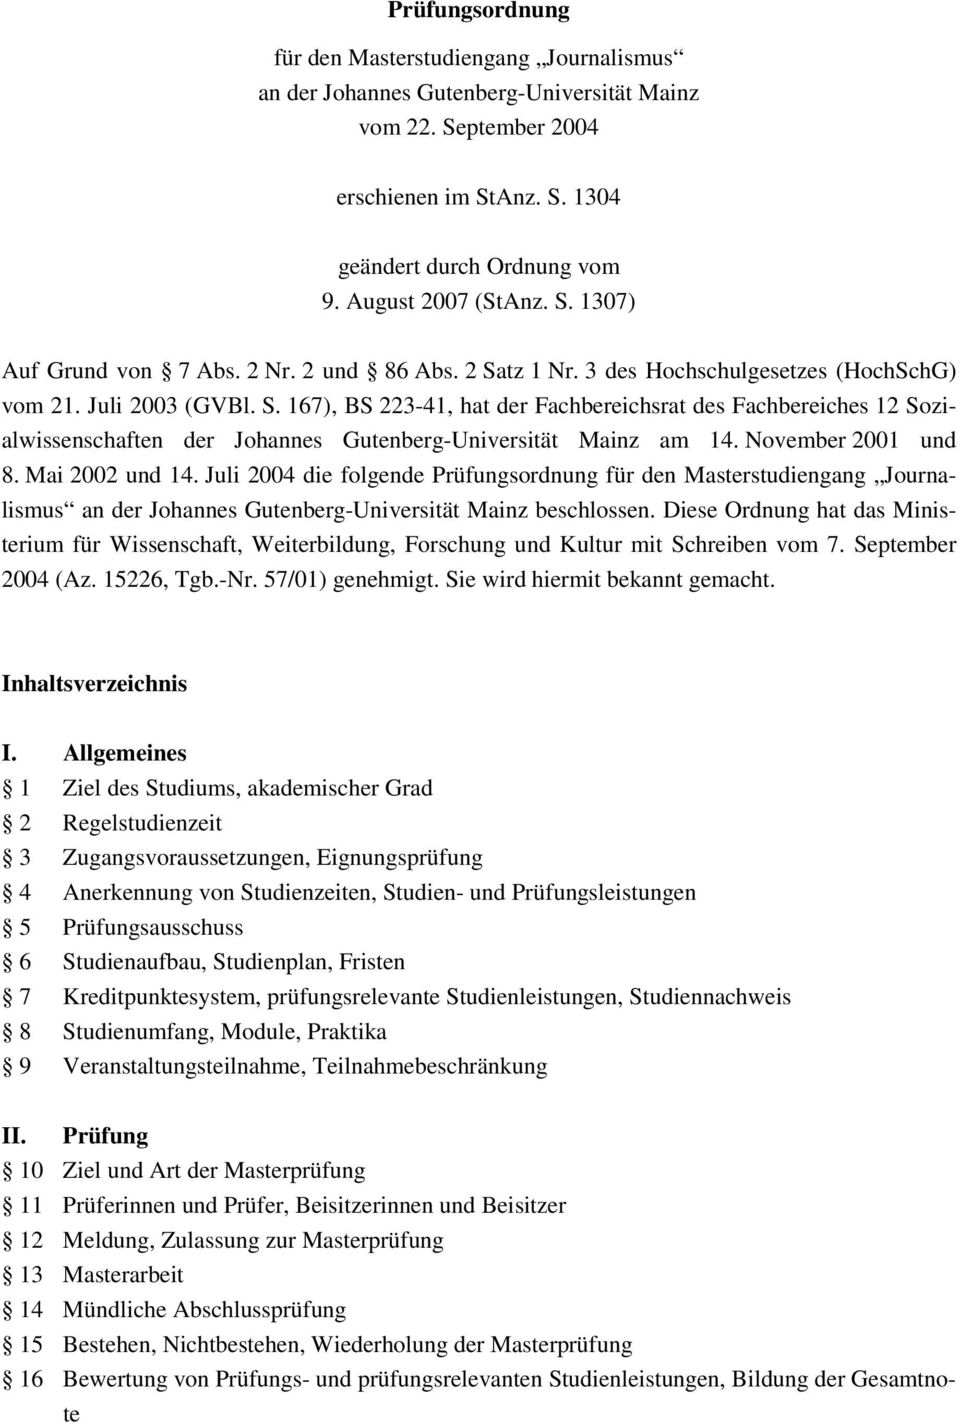 November 2001 und 8. Mai 2002 und 14. Juli 2004 die folgende Prüfungsordnung für den Masterstudiengang Journalismus an der Johannes Gutenberg-Universität Mainz beschlossen.